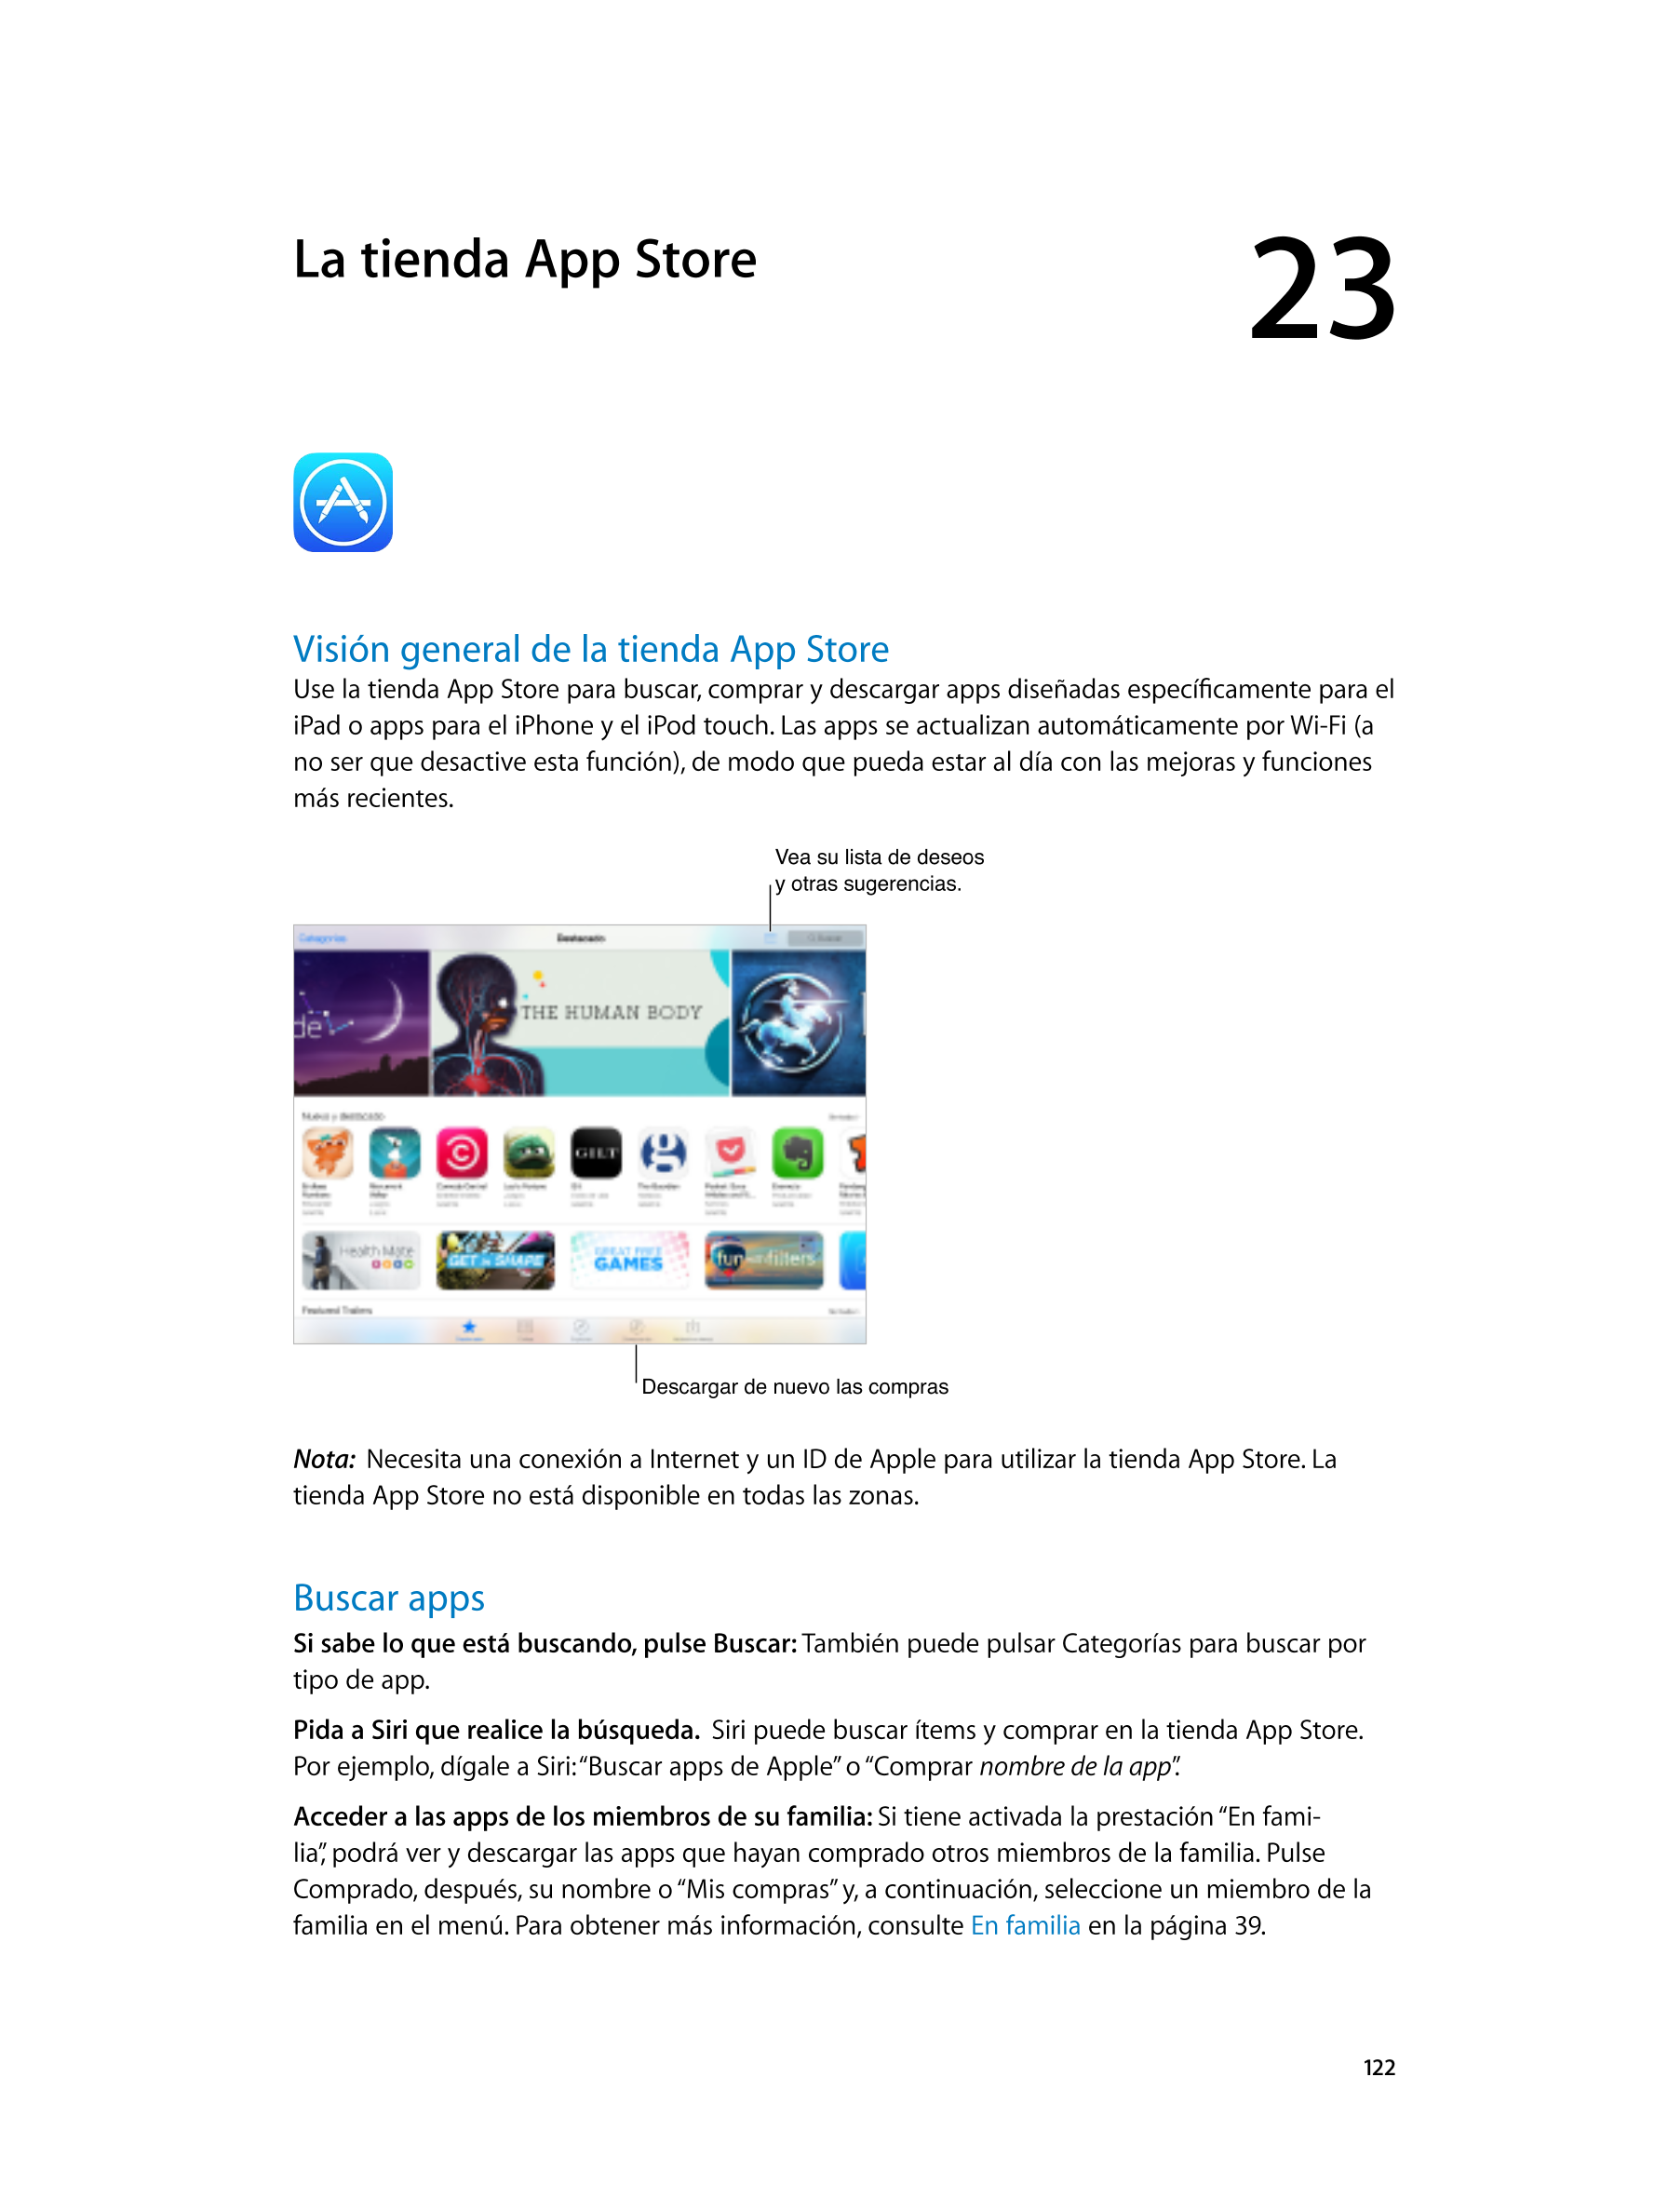  La tienda App  Store 23  
Visión general de la tienda App  Store
Use la tienda App Store para buscar, comprar y descargar apps 